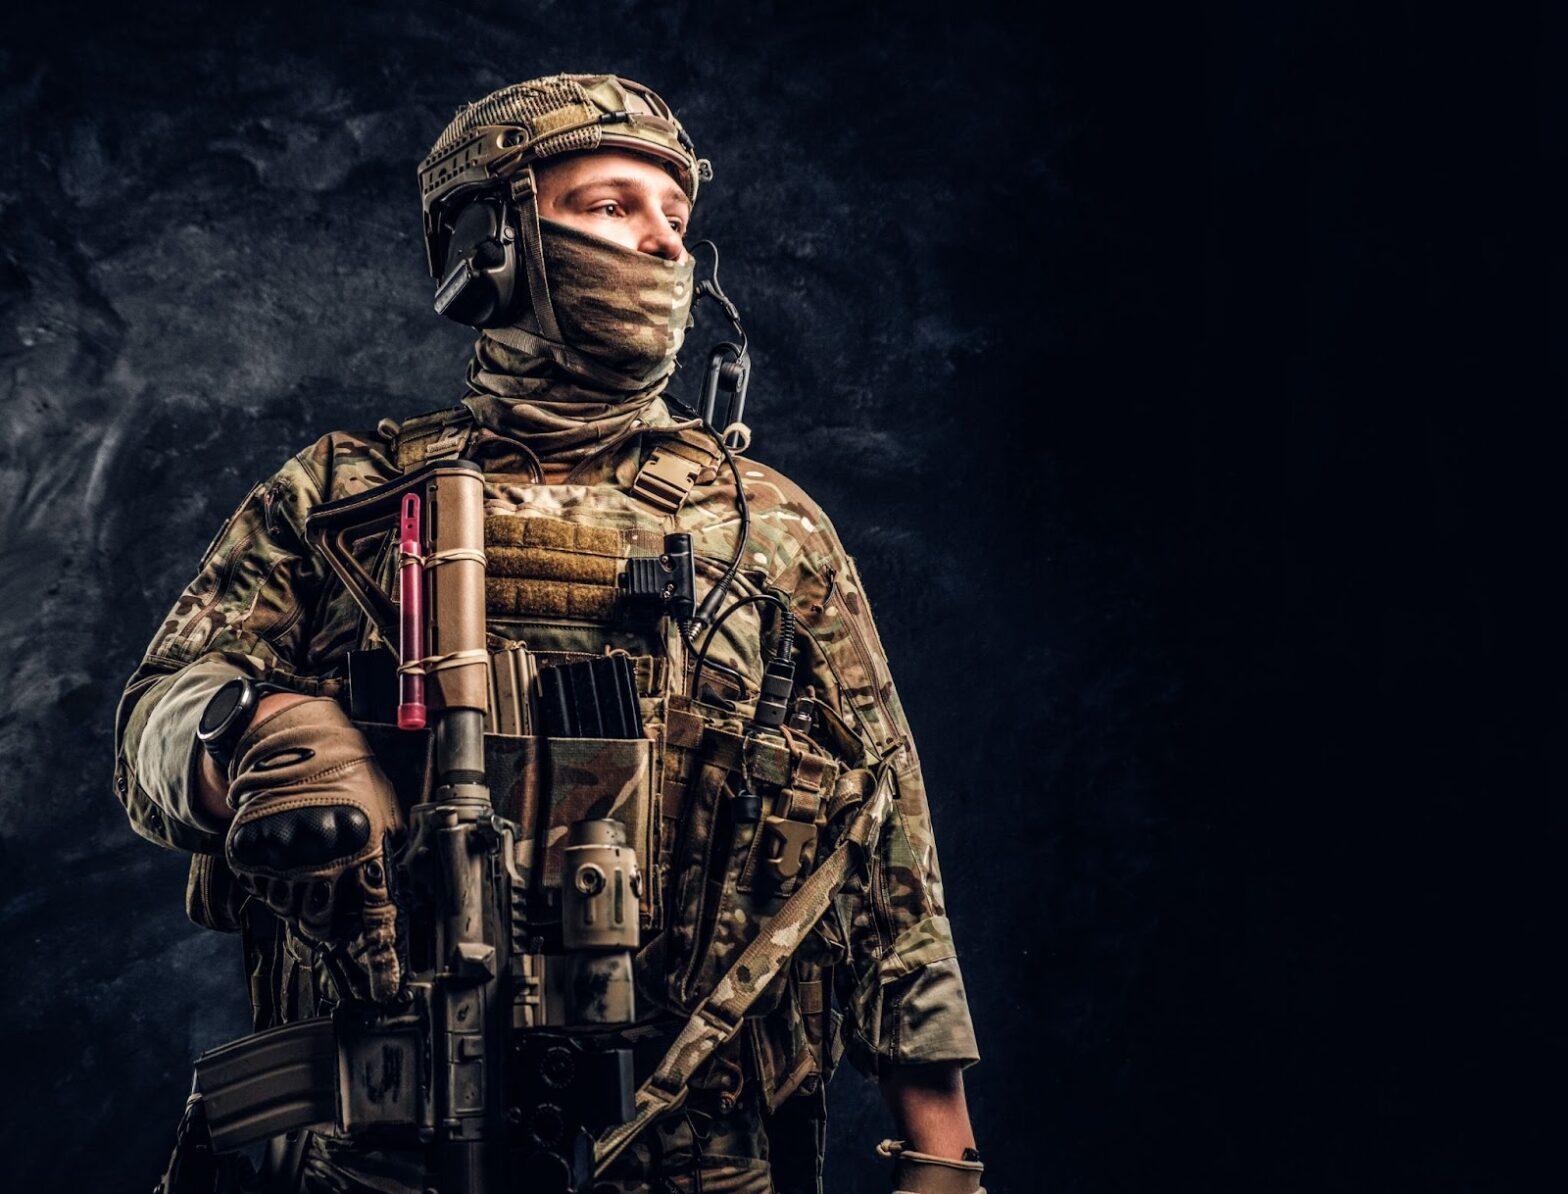 Soldier in camouflage uniform